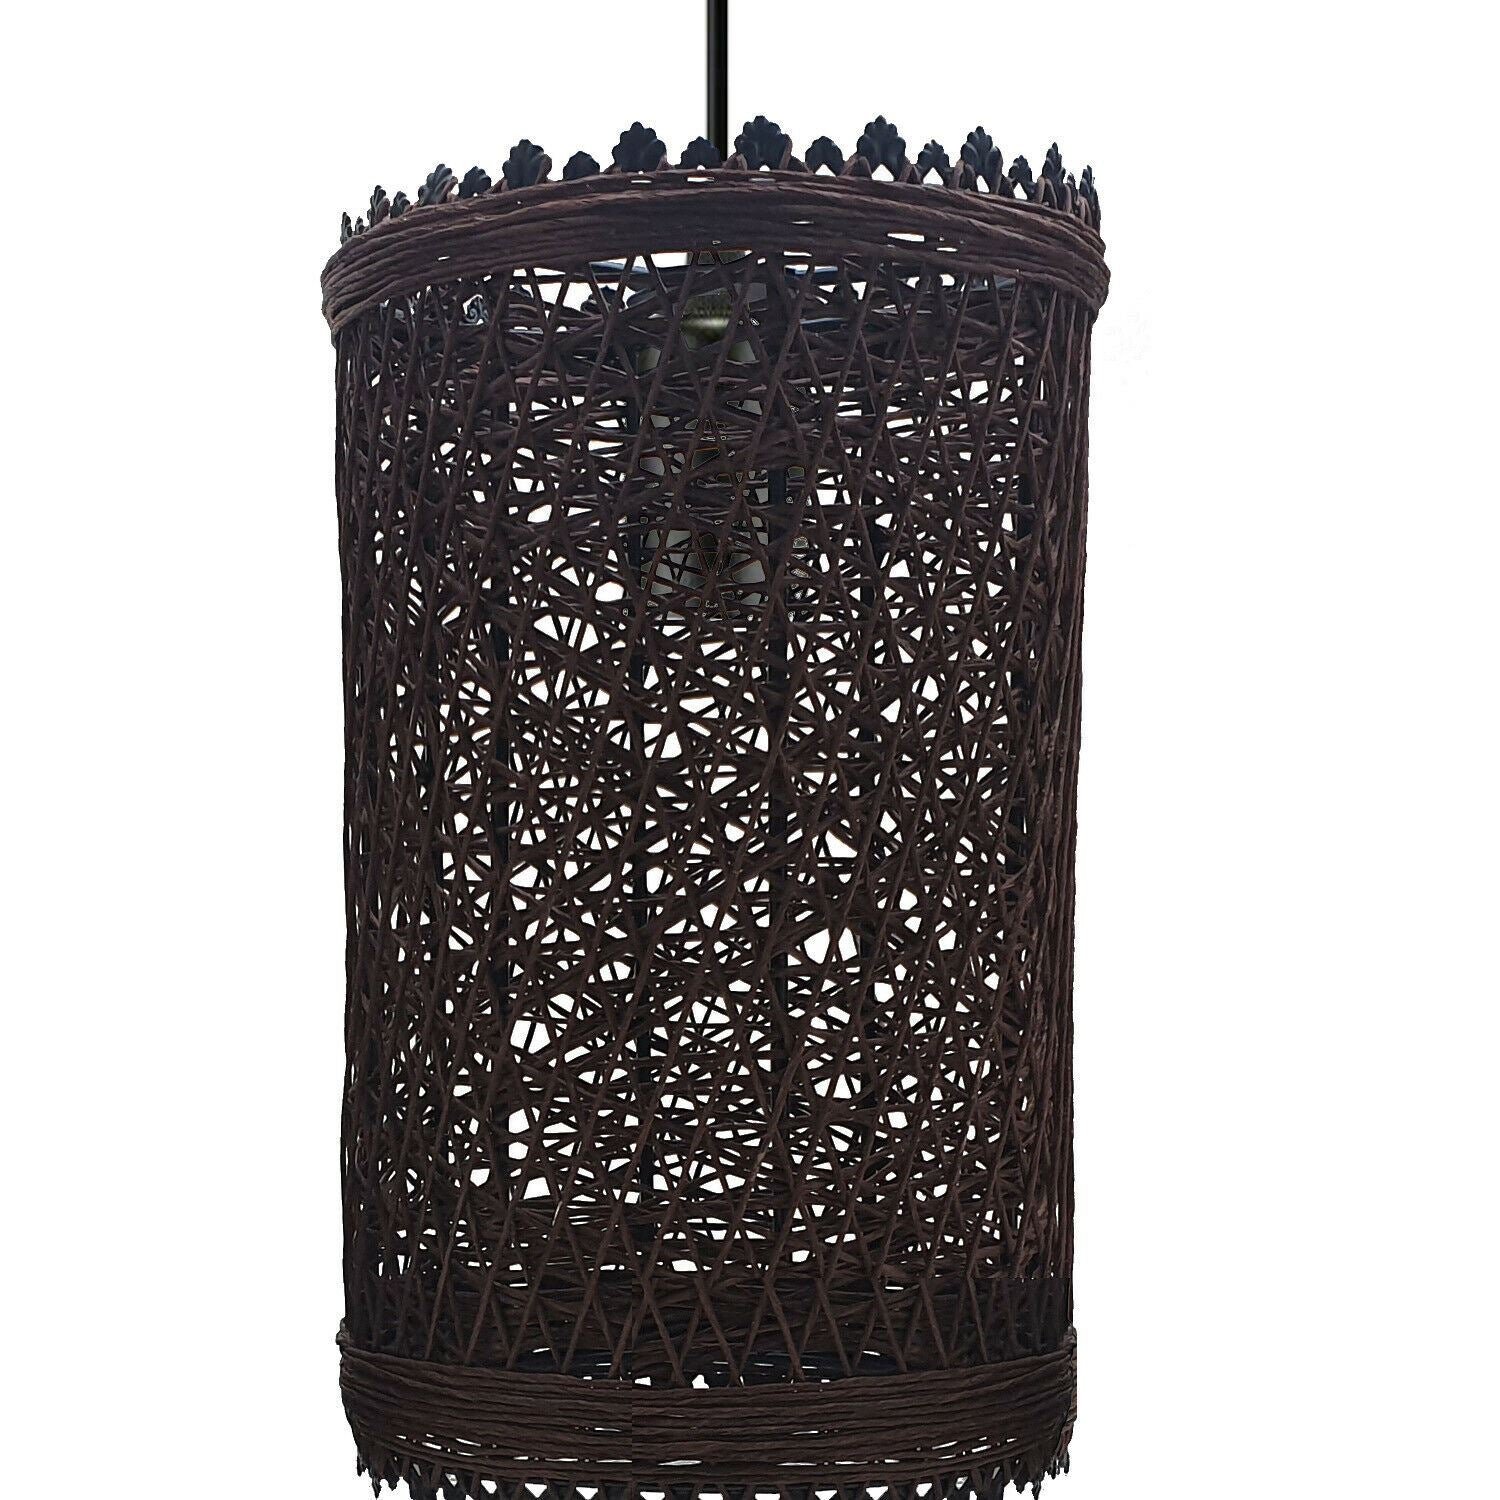 Modern Pendant Light Rattan Wicker Basket Ceiling Pendant Light Kit~1332 - LEDSone UK Ltd